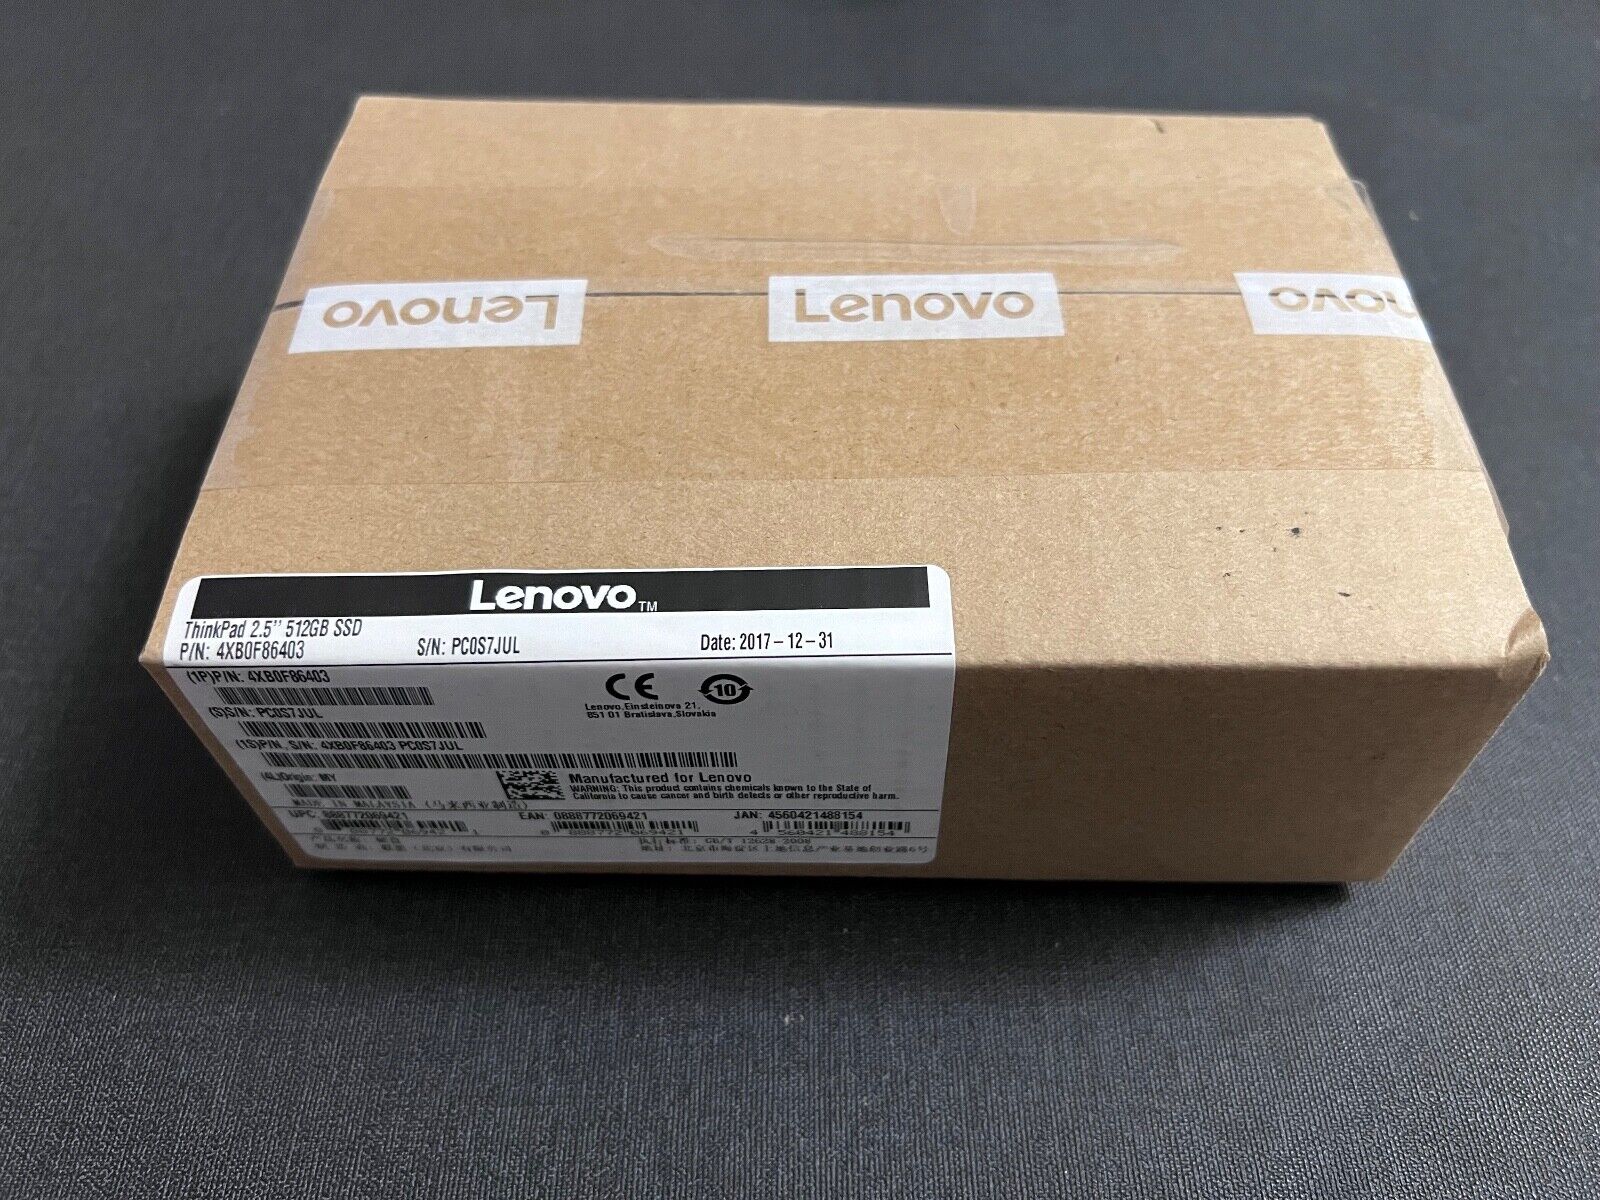 New Genuine Lenovo 4XB0F86403 512GB 2.5” 7mm SSD Drive for ThinkPad